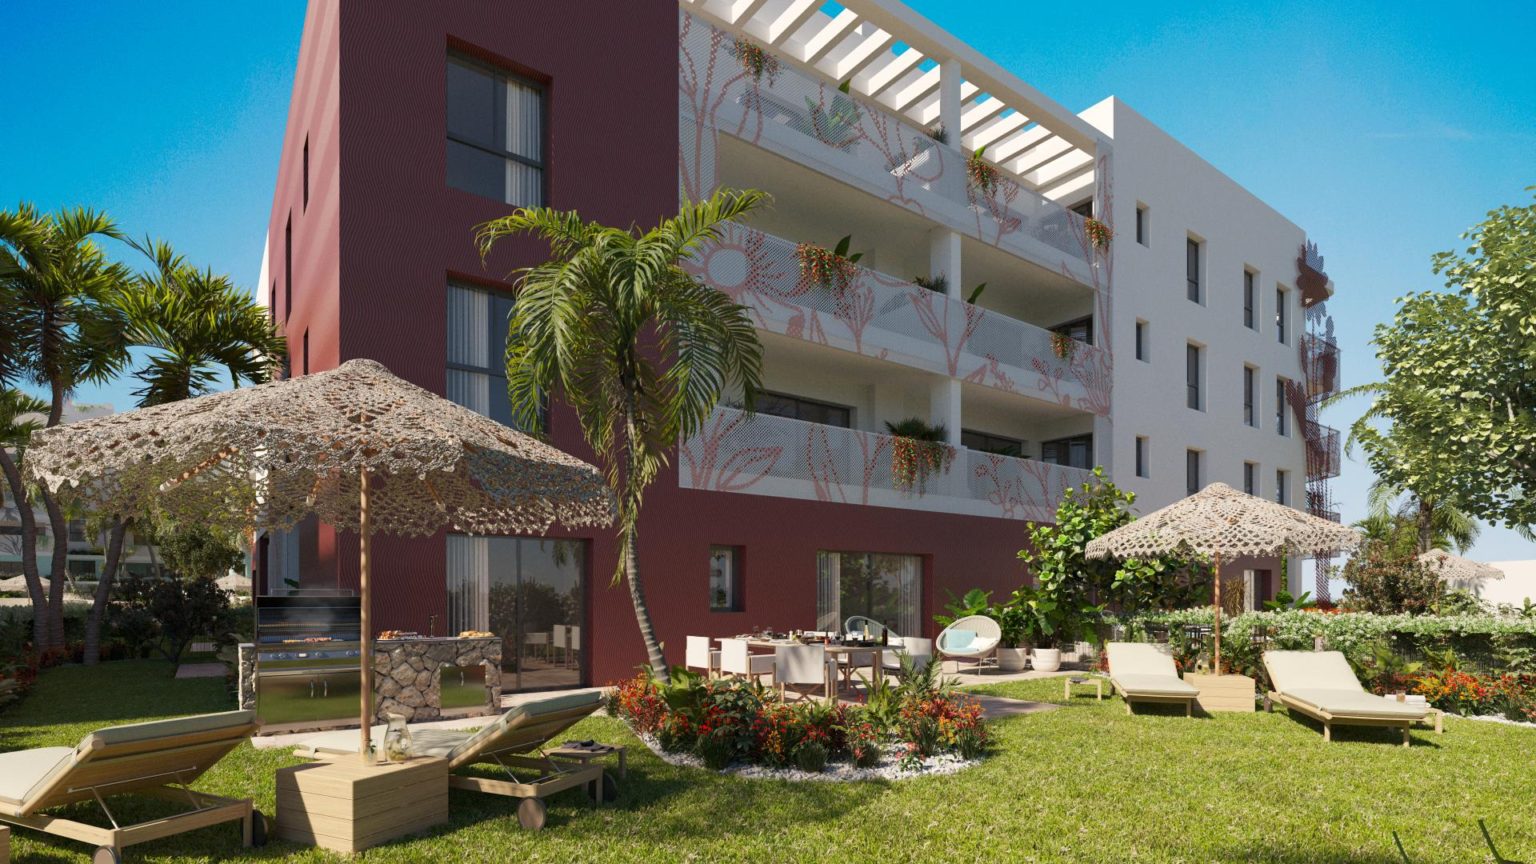 Appartement de style de vie avec jardin dans la ville d’Ibiza avec gestion locative gratuite pour les investisseurs